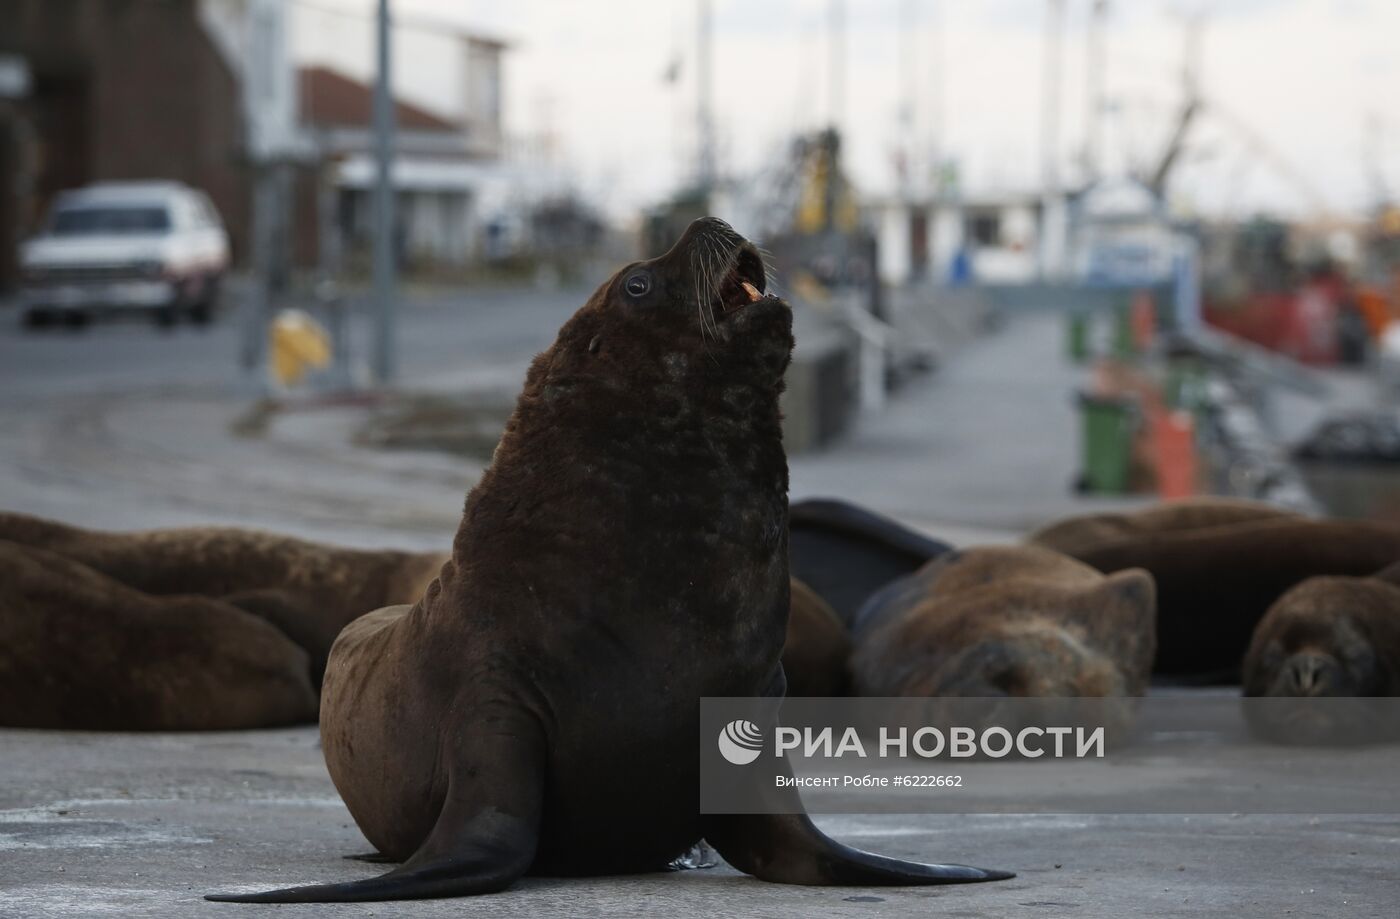 Морские львы вышли на улицы опустевшего в связи с карантином города в Аргентине